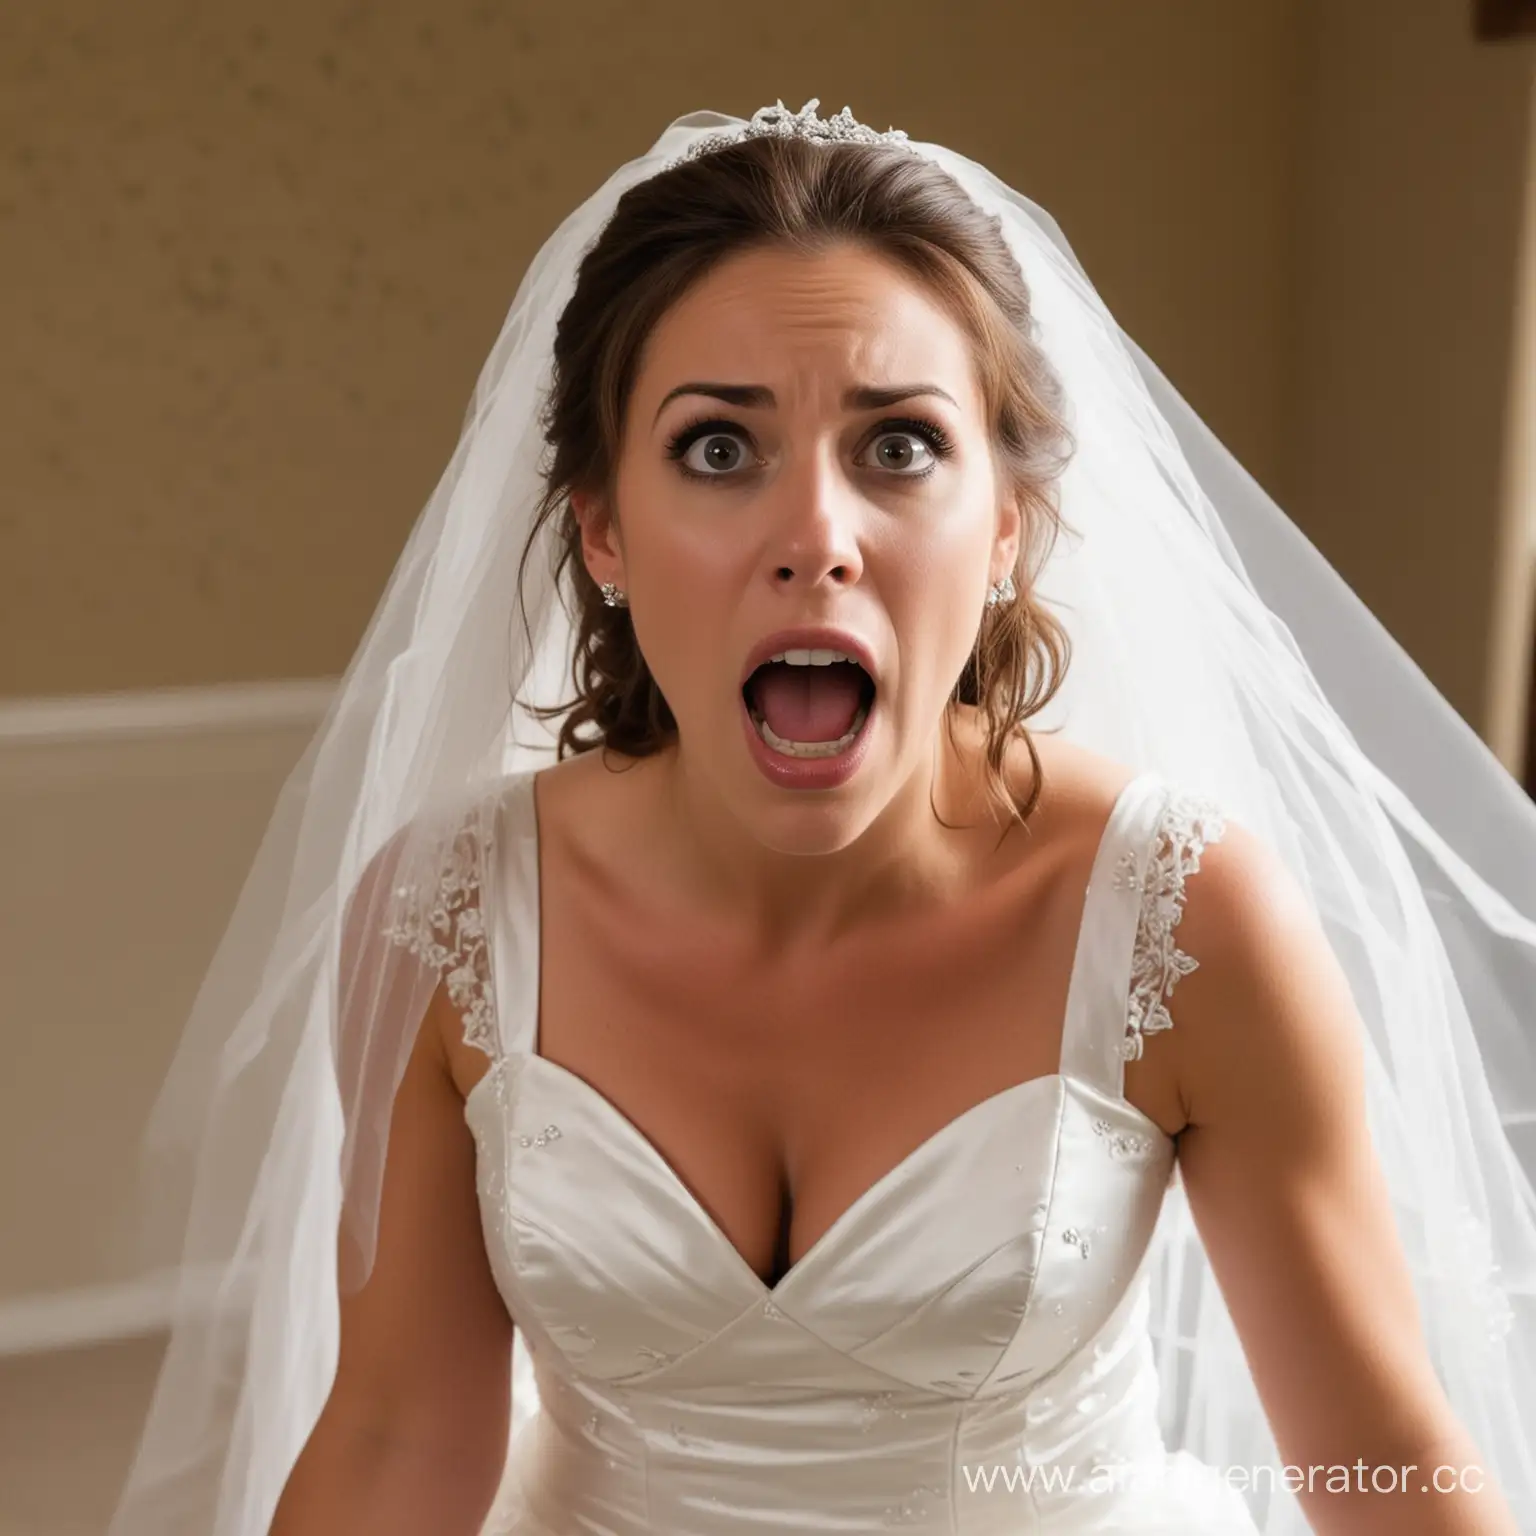 Bride-in-Shock-at-Wedding-Ceremony